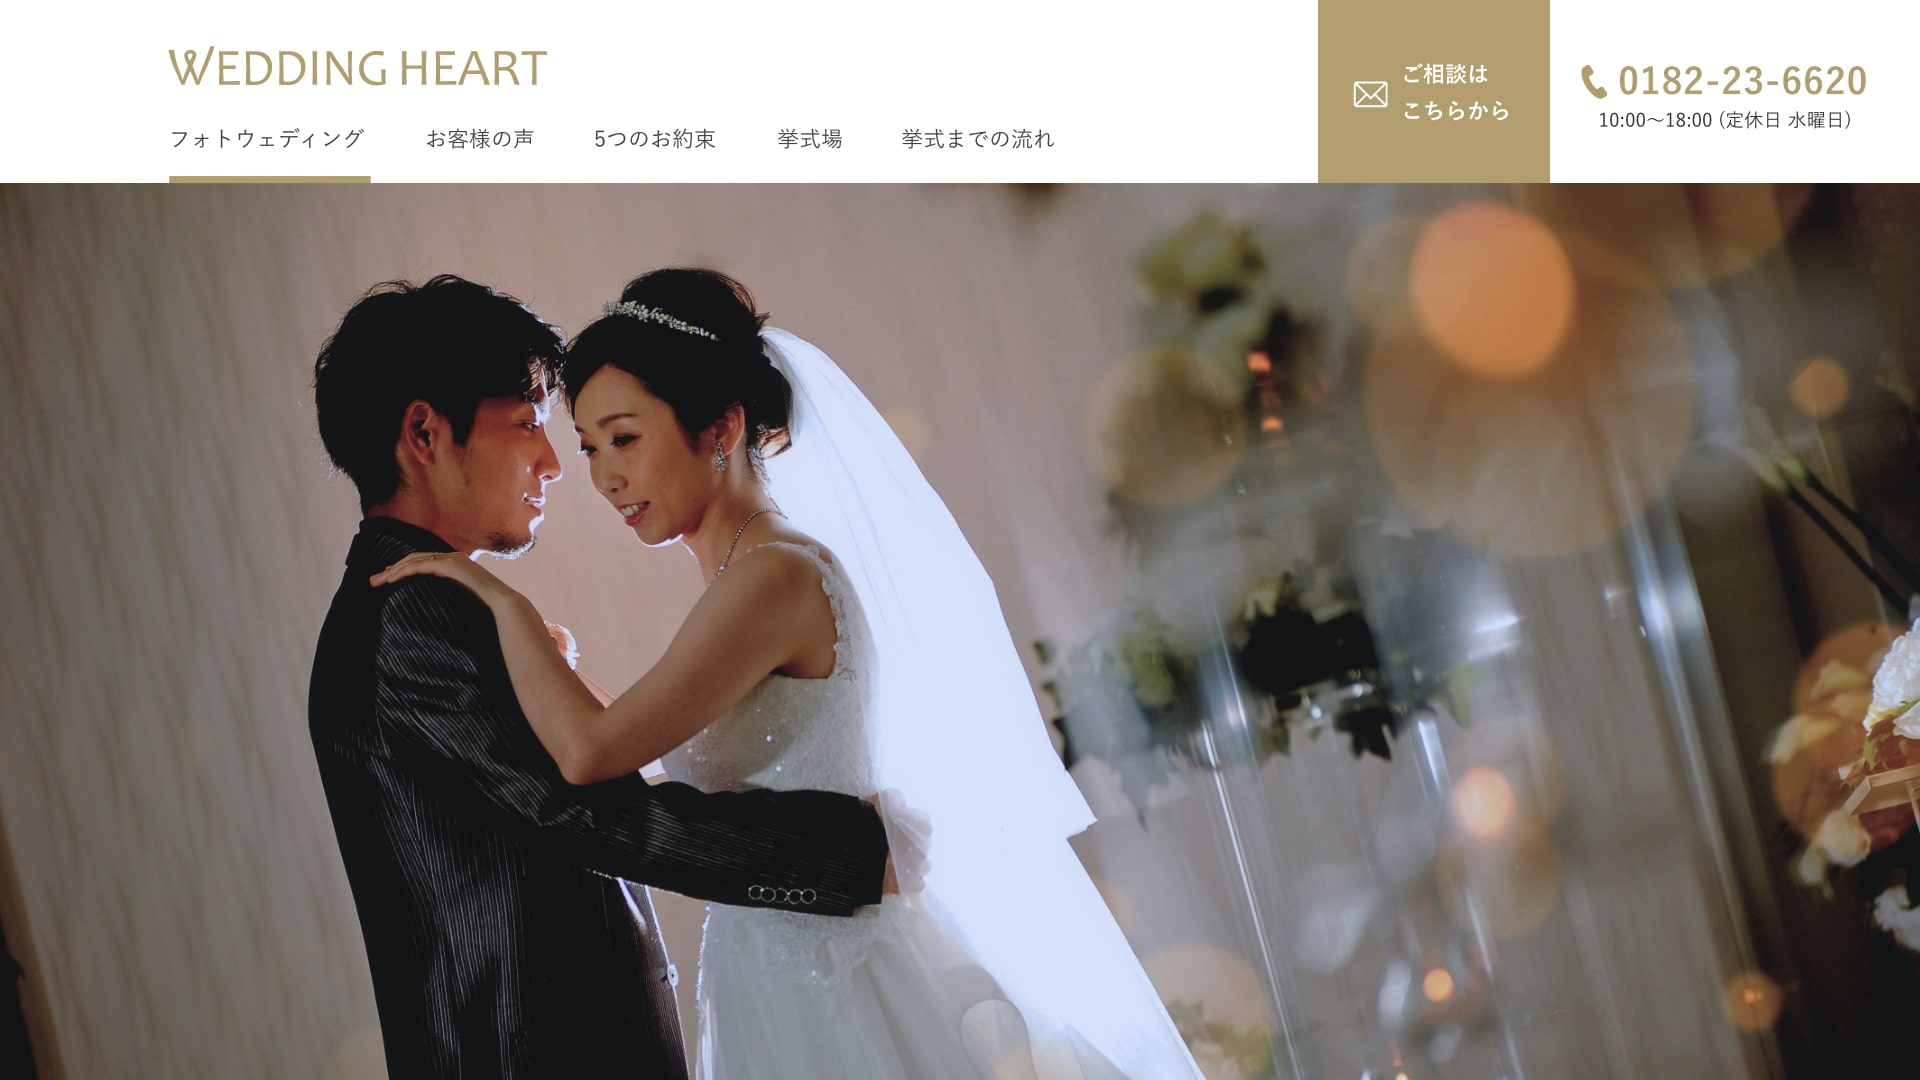 WEDDING HEART様のサイトイメージ